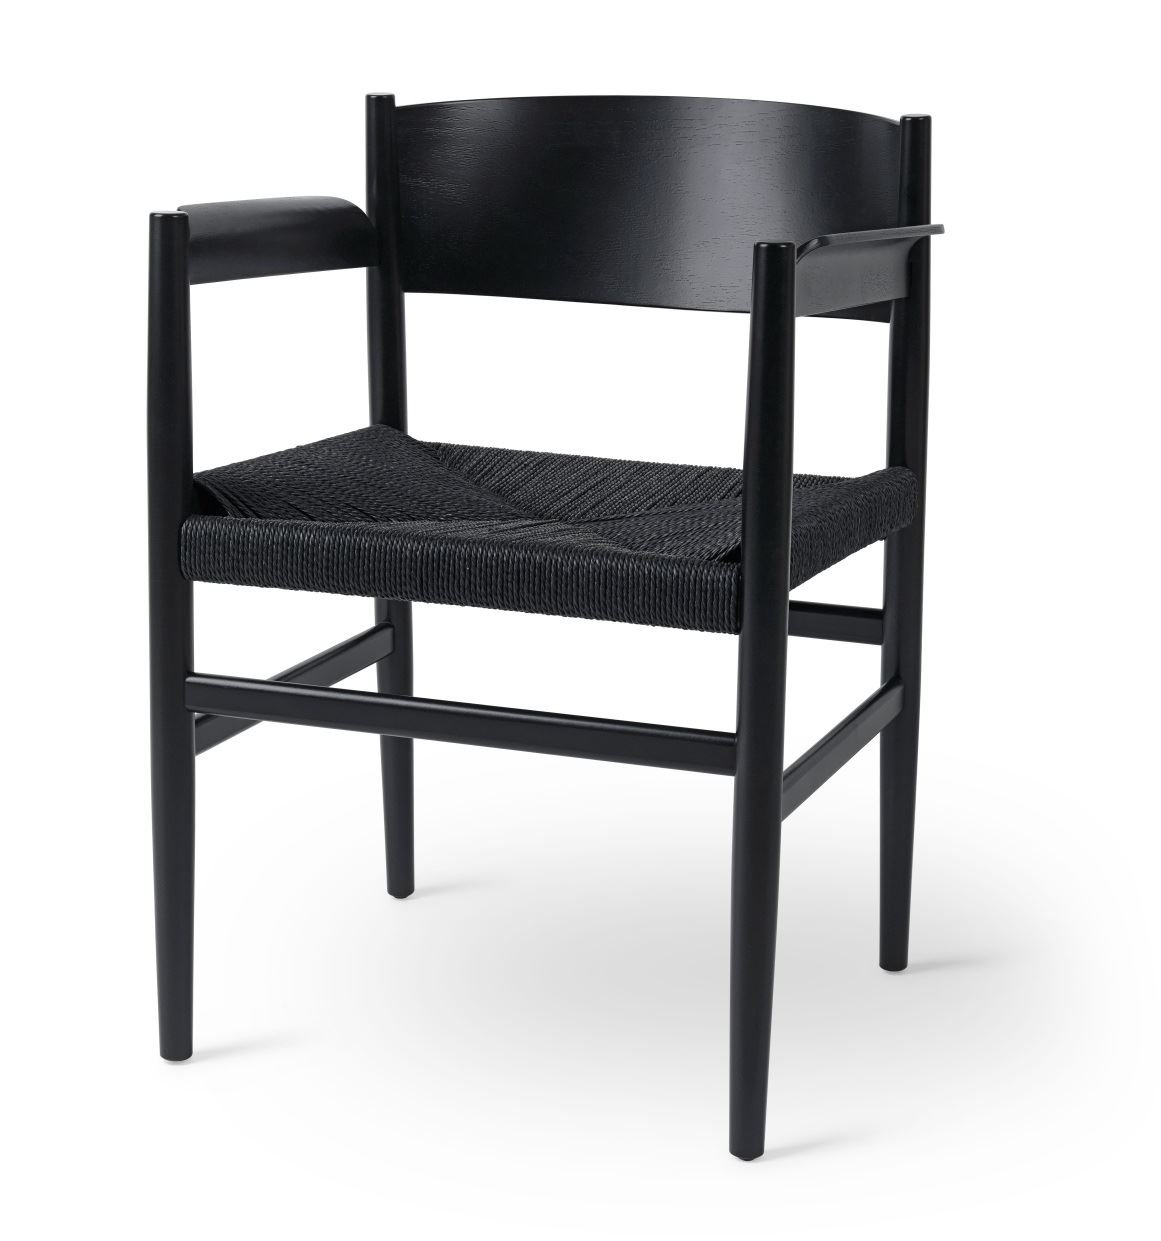 Billede af Mater Nestor Sidechair Armrest SH: 44 cm - Black Beech/Black Paper Cord Seat 